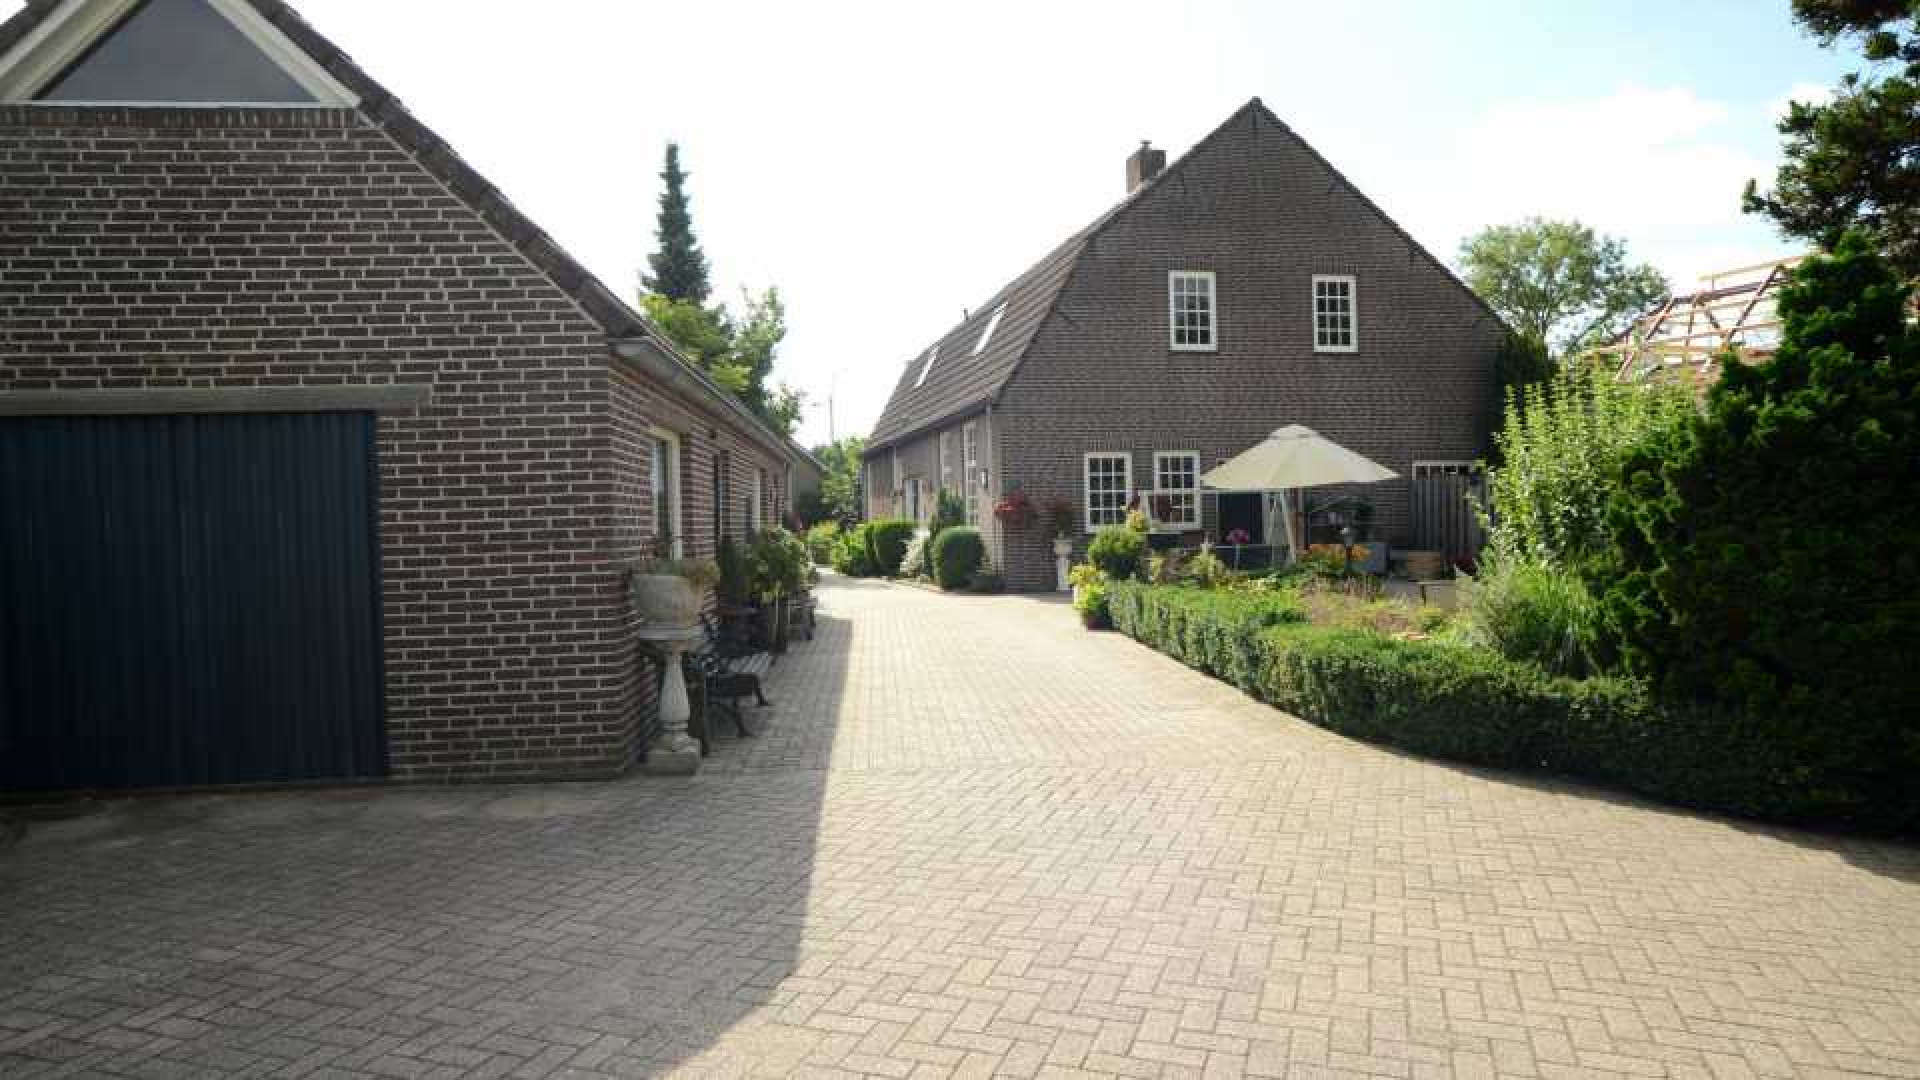 Michael van Gerwen huurt luxe woonboerderij. Zie foto's